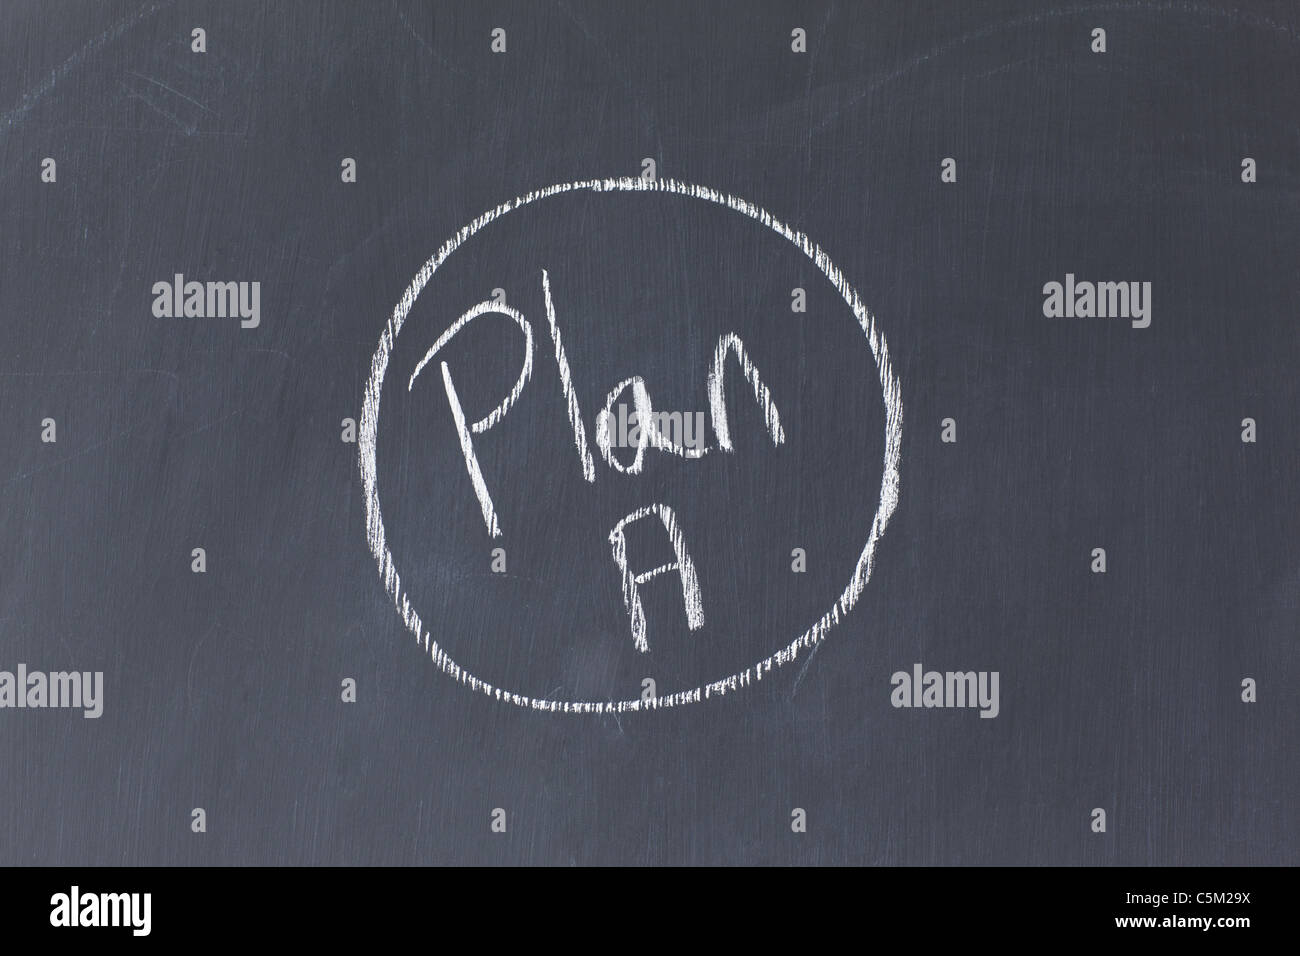 Blackboard with Plan A written on it Stock Photo